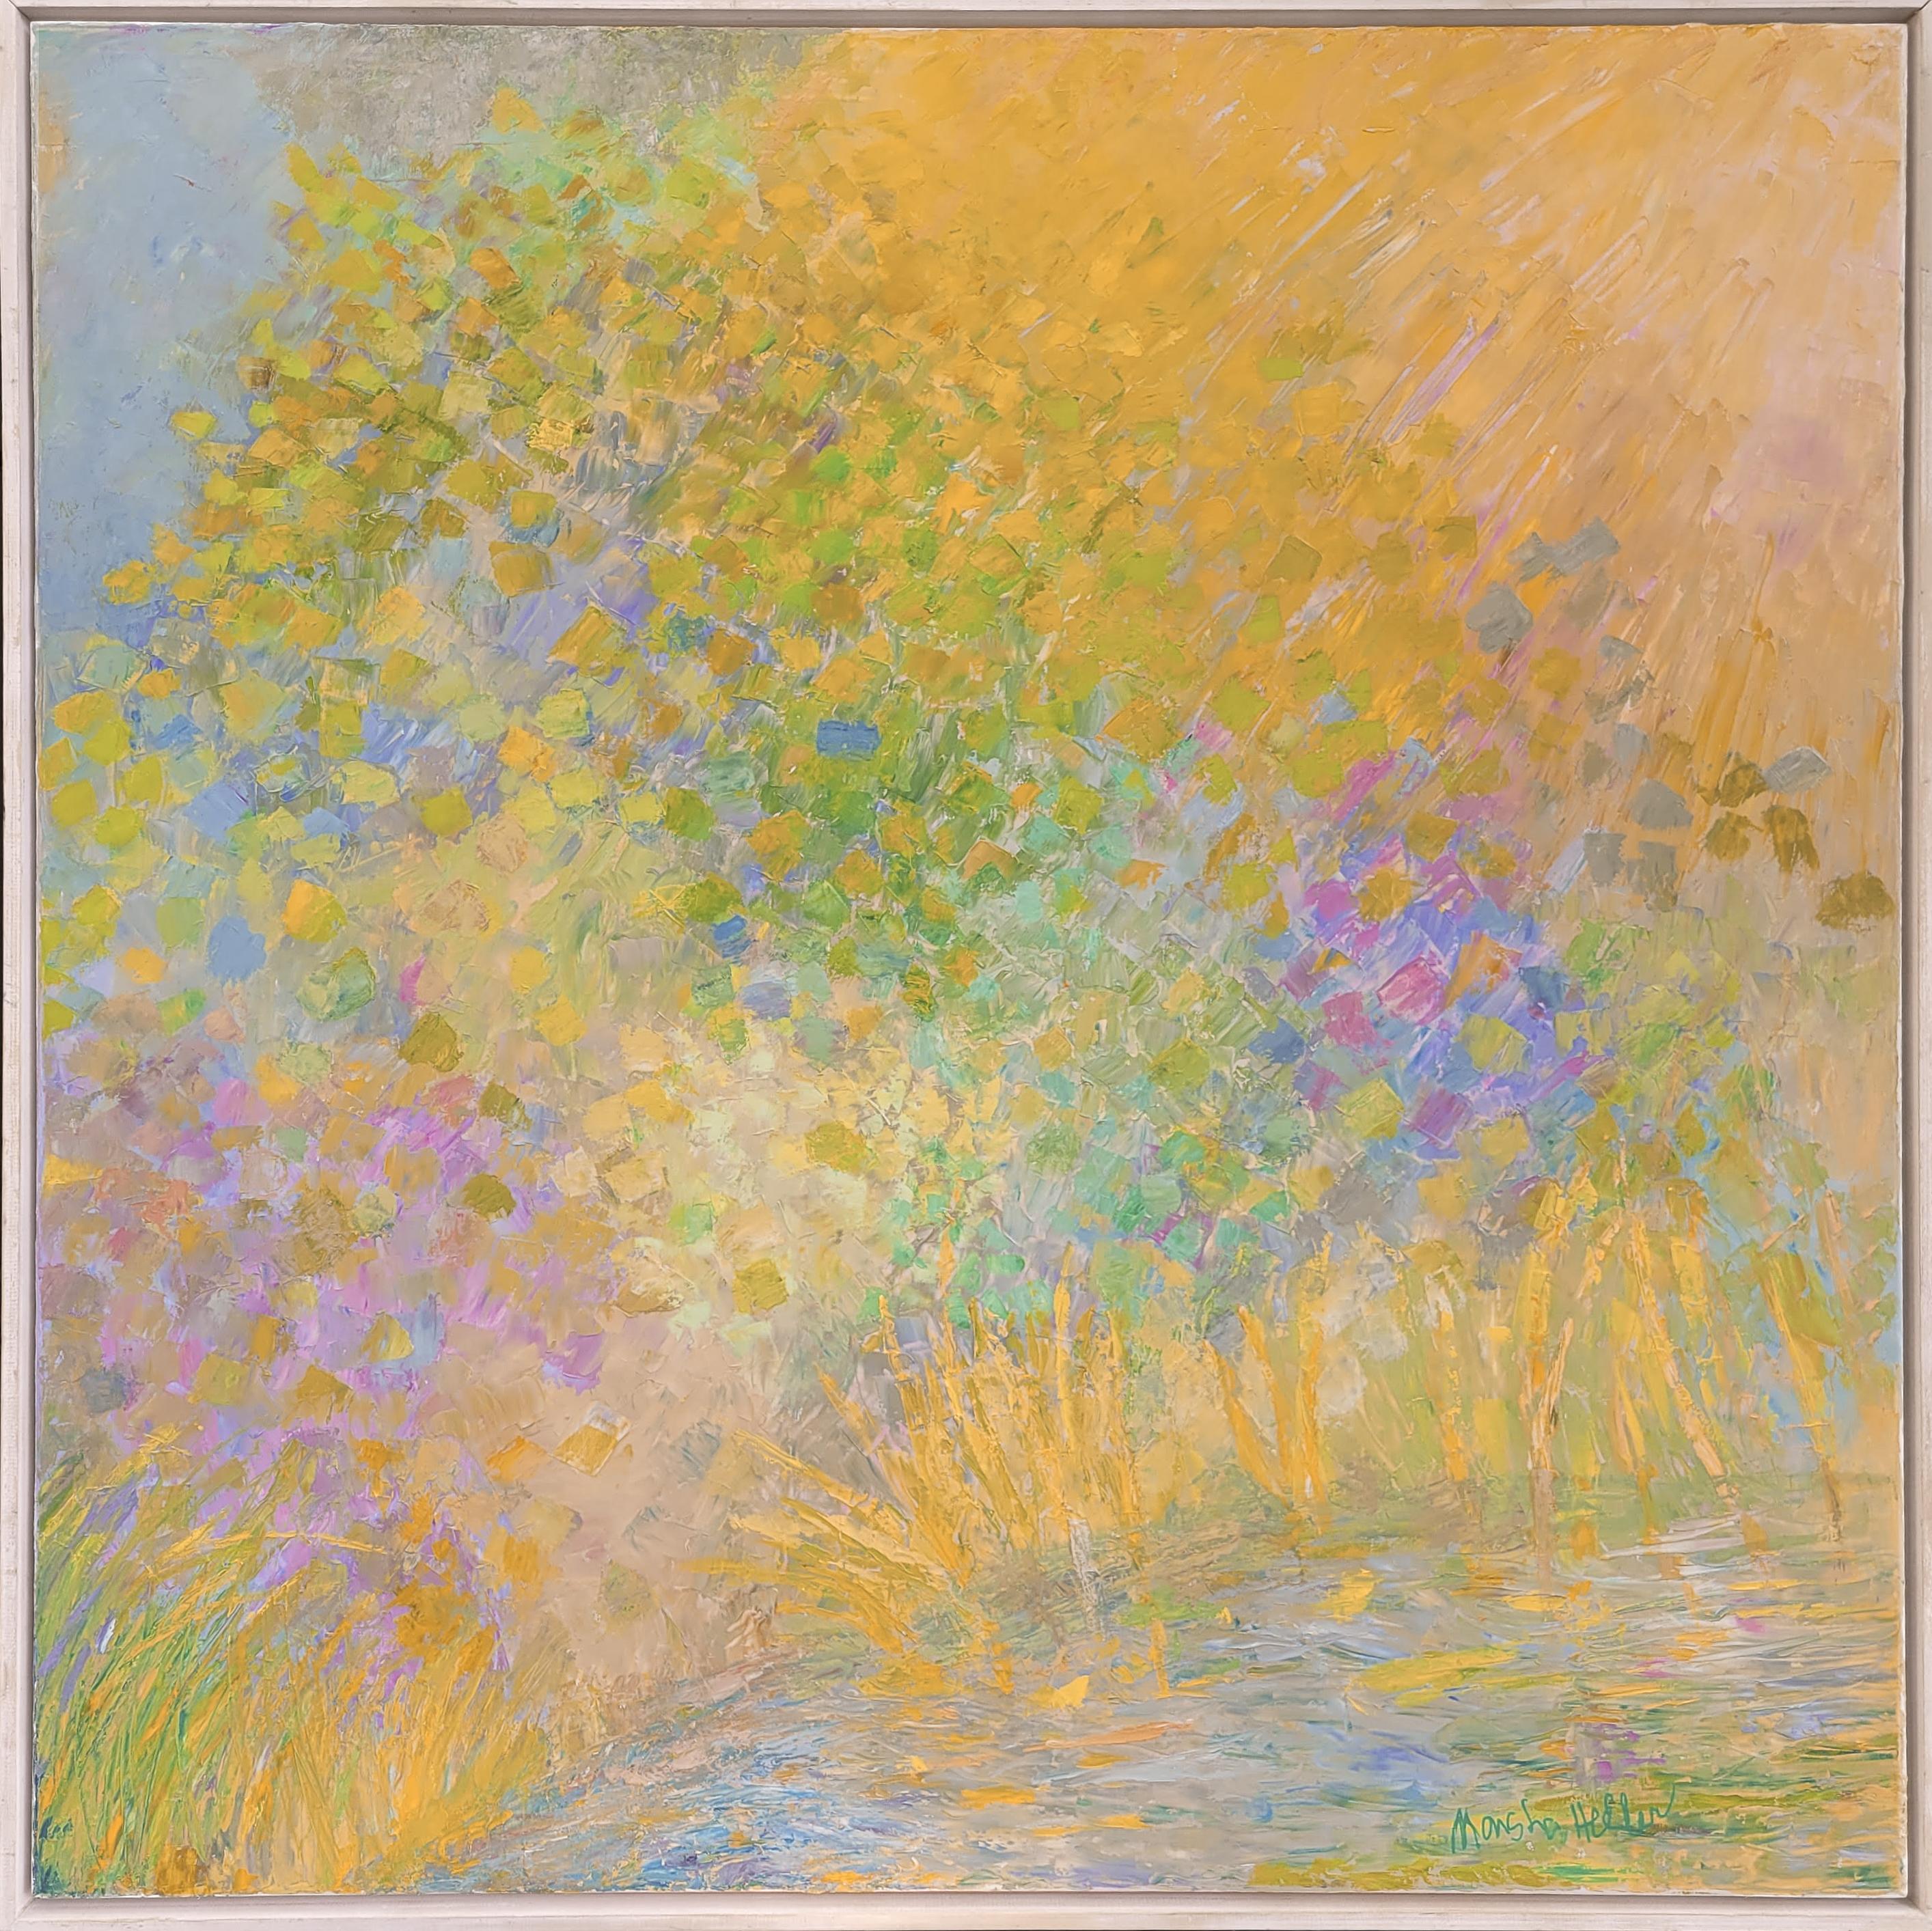 Spring Fling 2, Original Framed Impressionist Landscape Painting, 2020
36